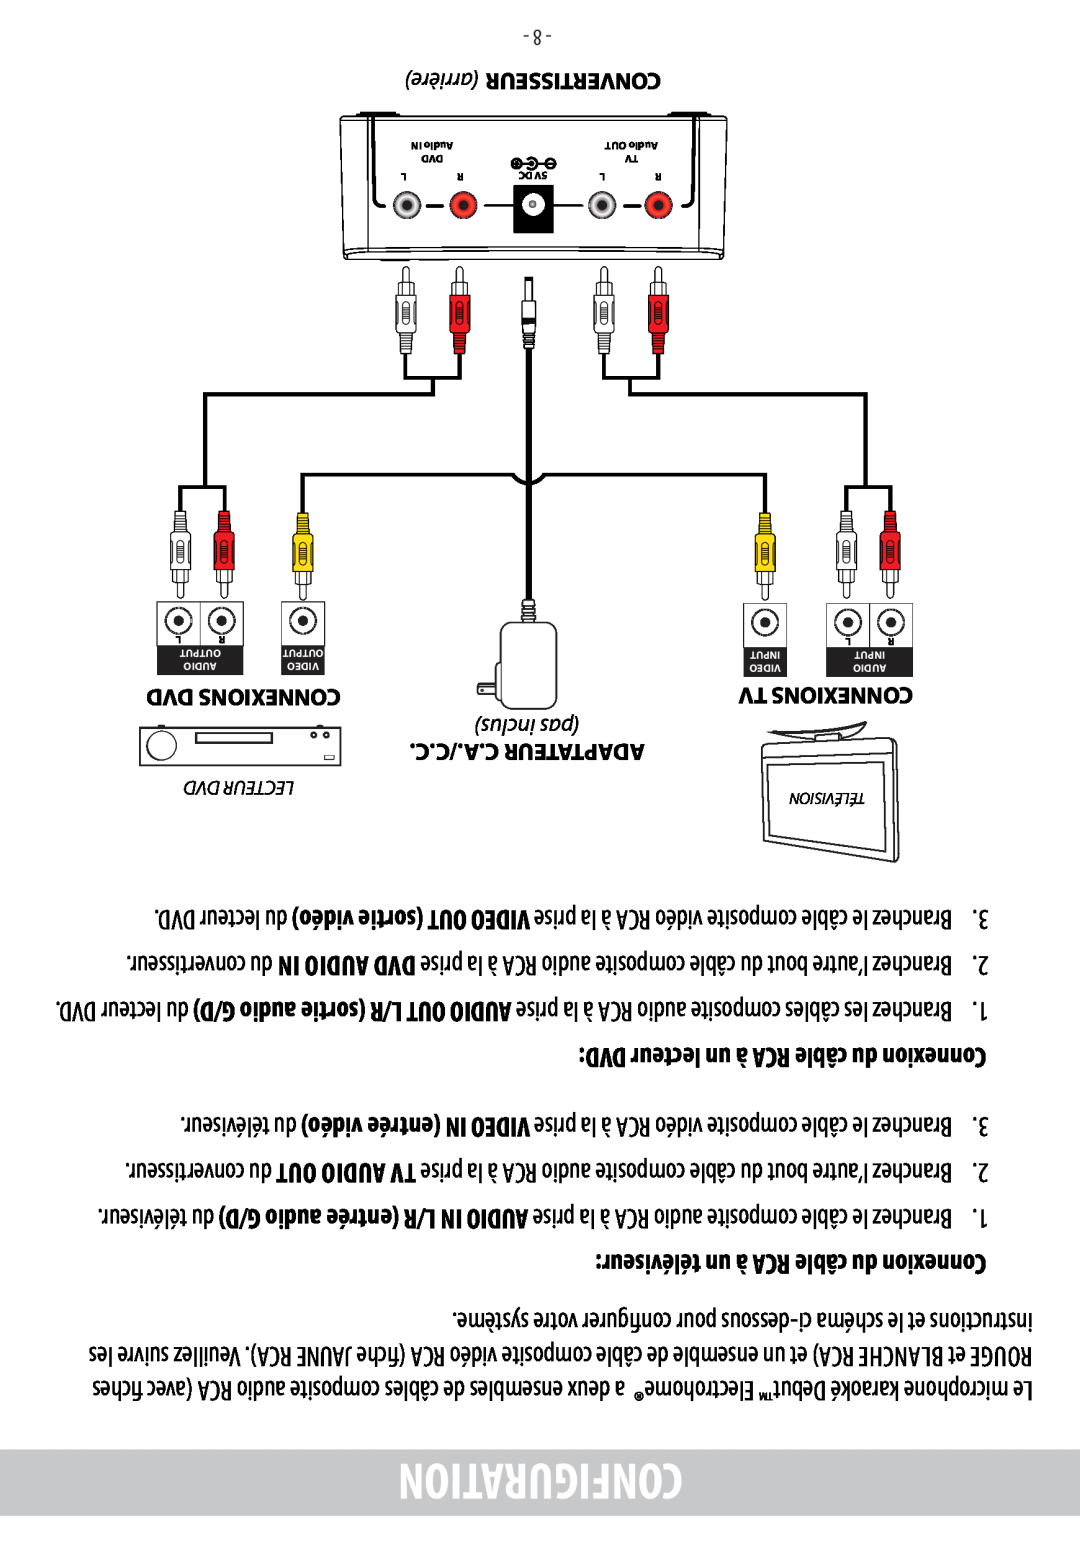 Electrohome EAKAR101 Igurationconf, Dvd Connexions, inclus pas, C./C.A.C Adaptateur, arrière CONVERTISSEUR, Tv Connexions 